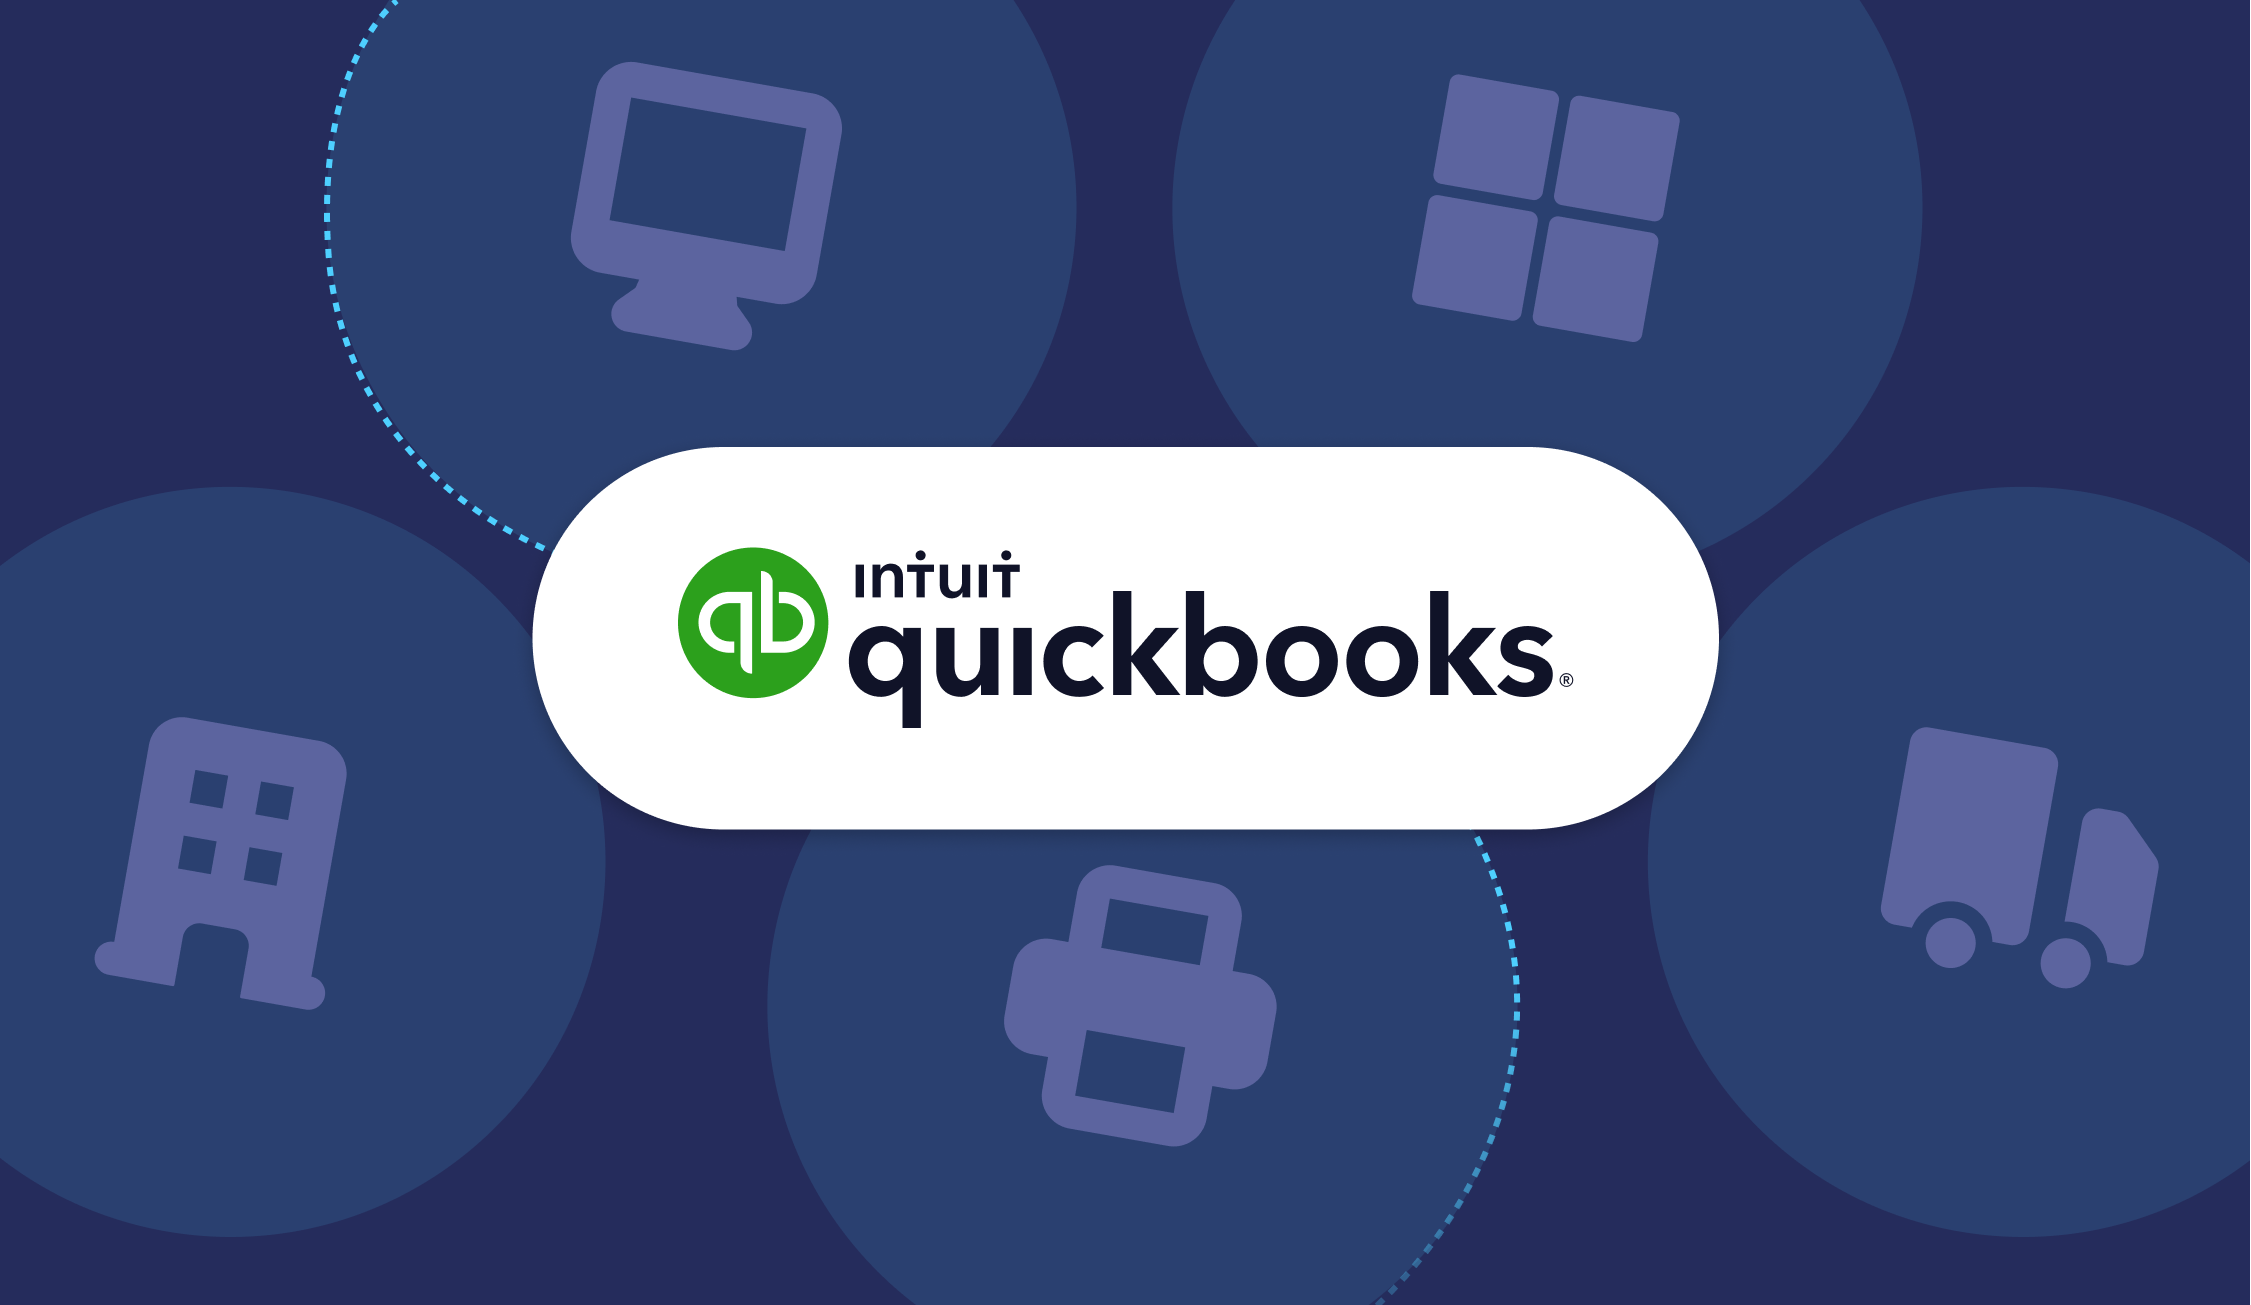 quickbooks logotype